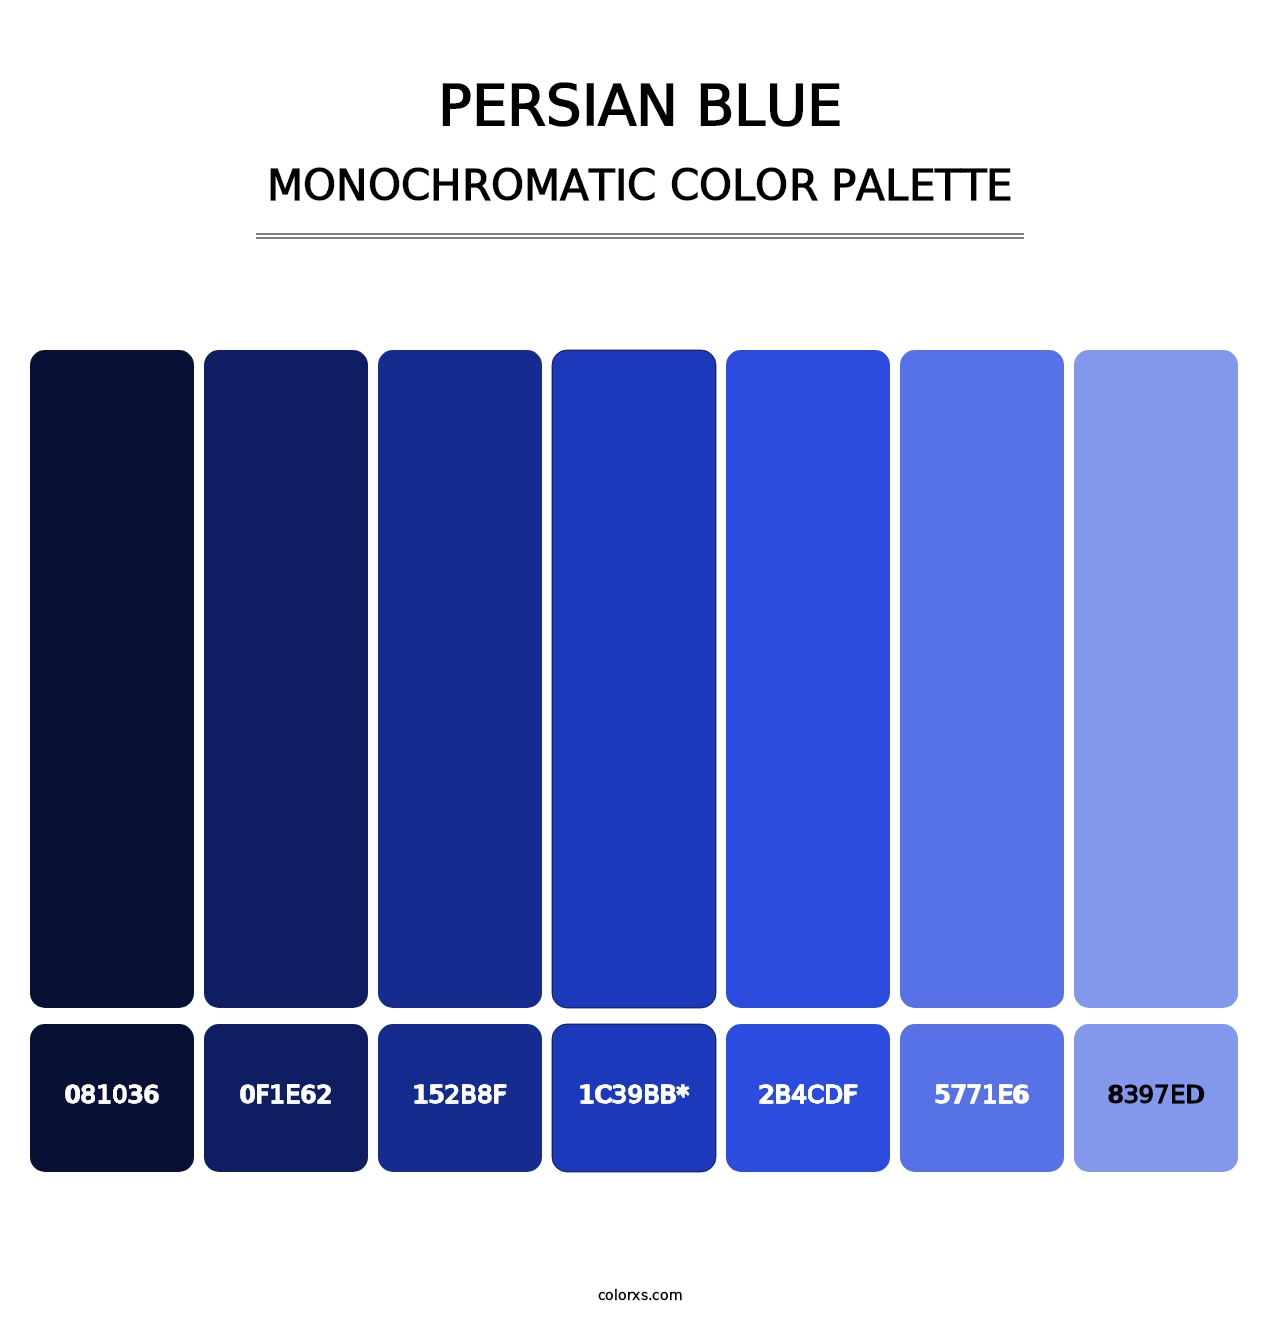 Persian Blue - Monochromatic Color Palette